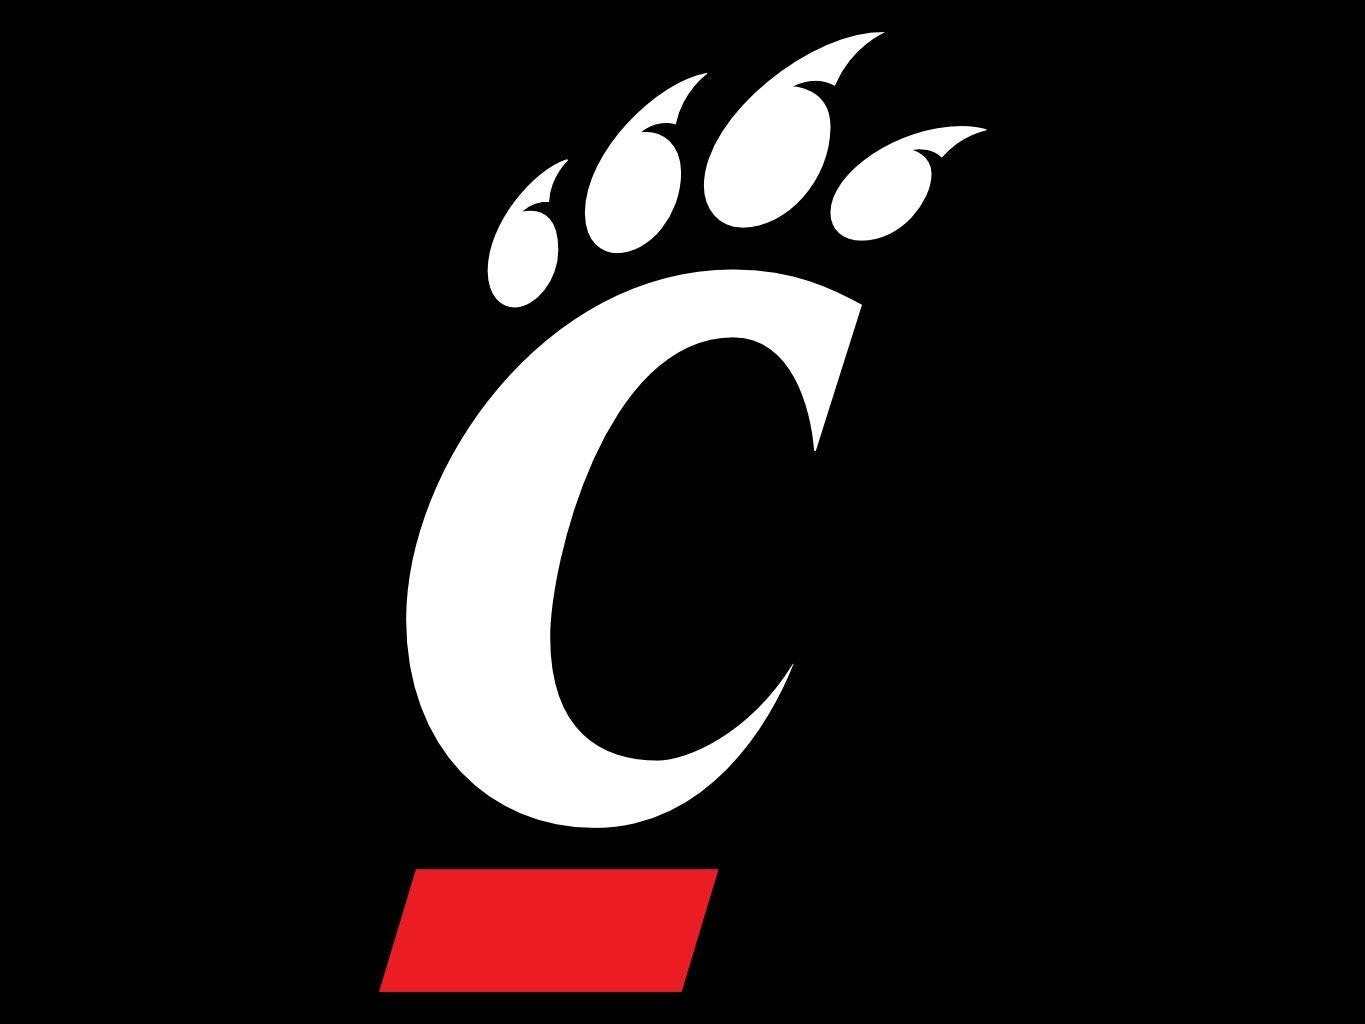 Cinn Logo - Cincinnati Logos